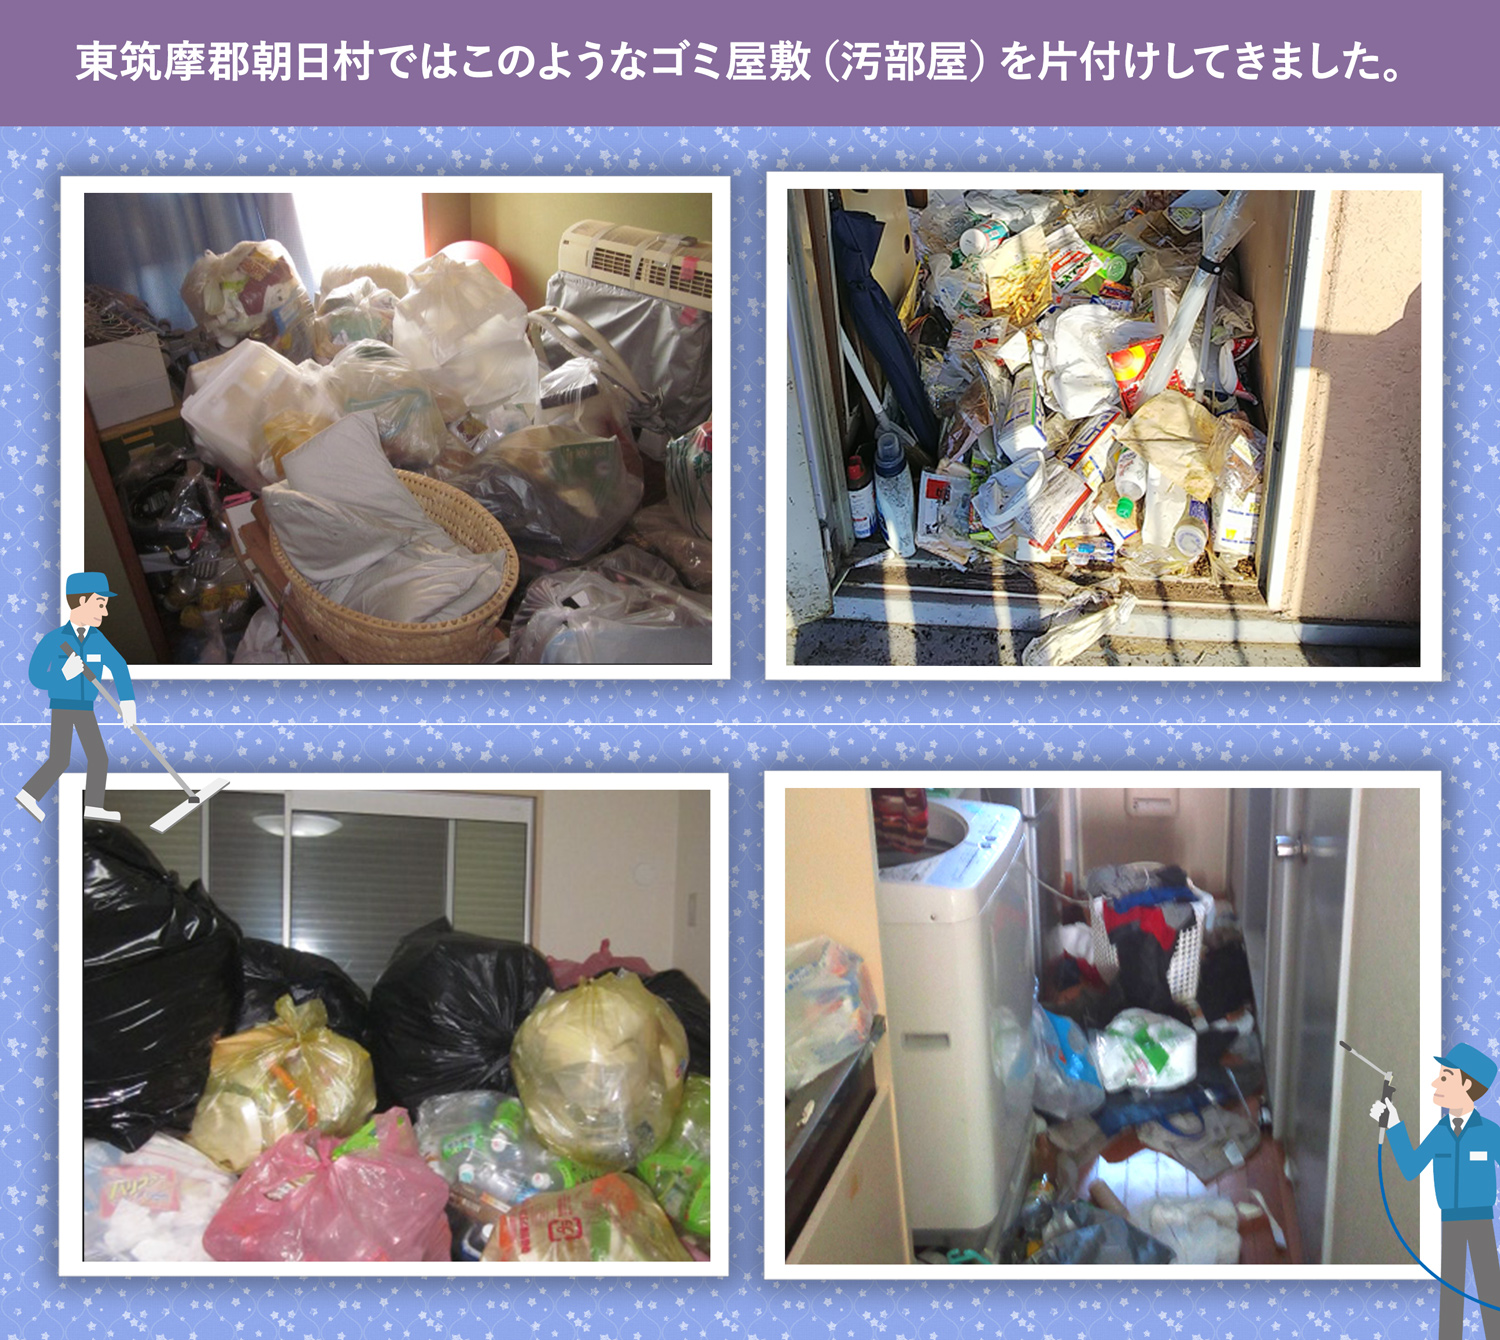 東筑摩郡朝日村で行ったで行ったごみ屋敷・汚部屋の片付けの一例